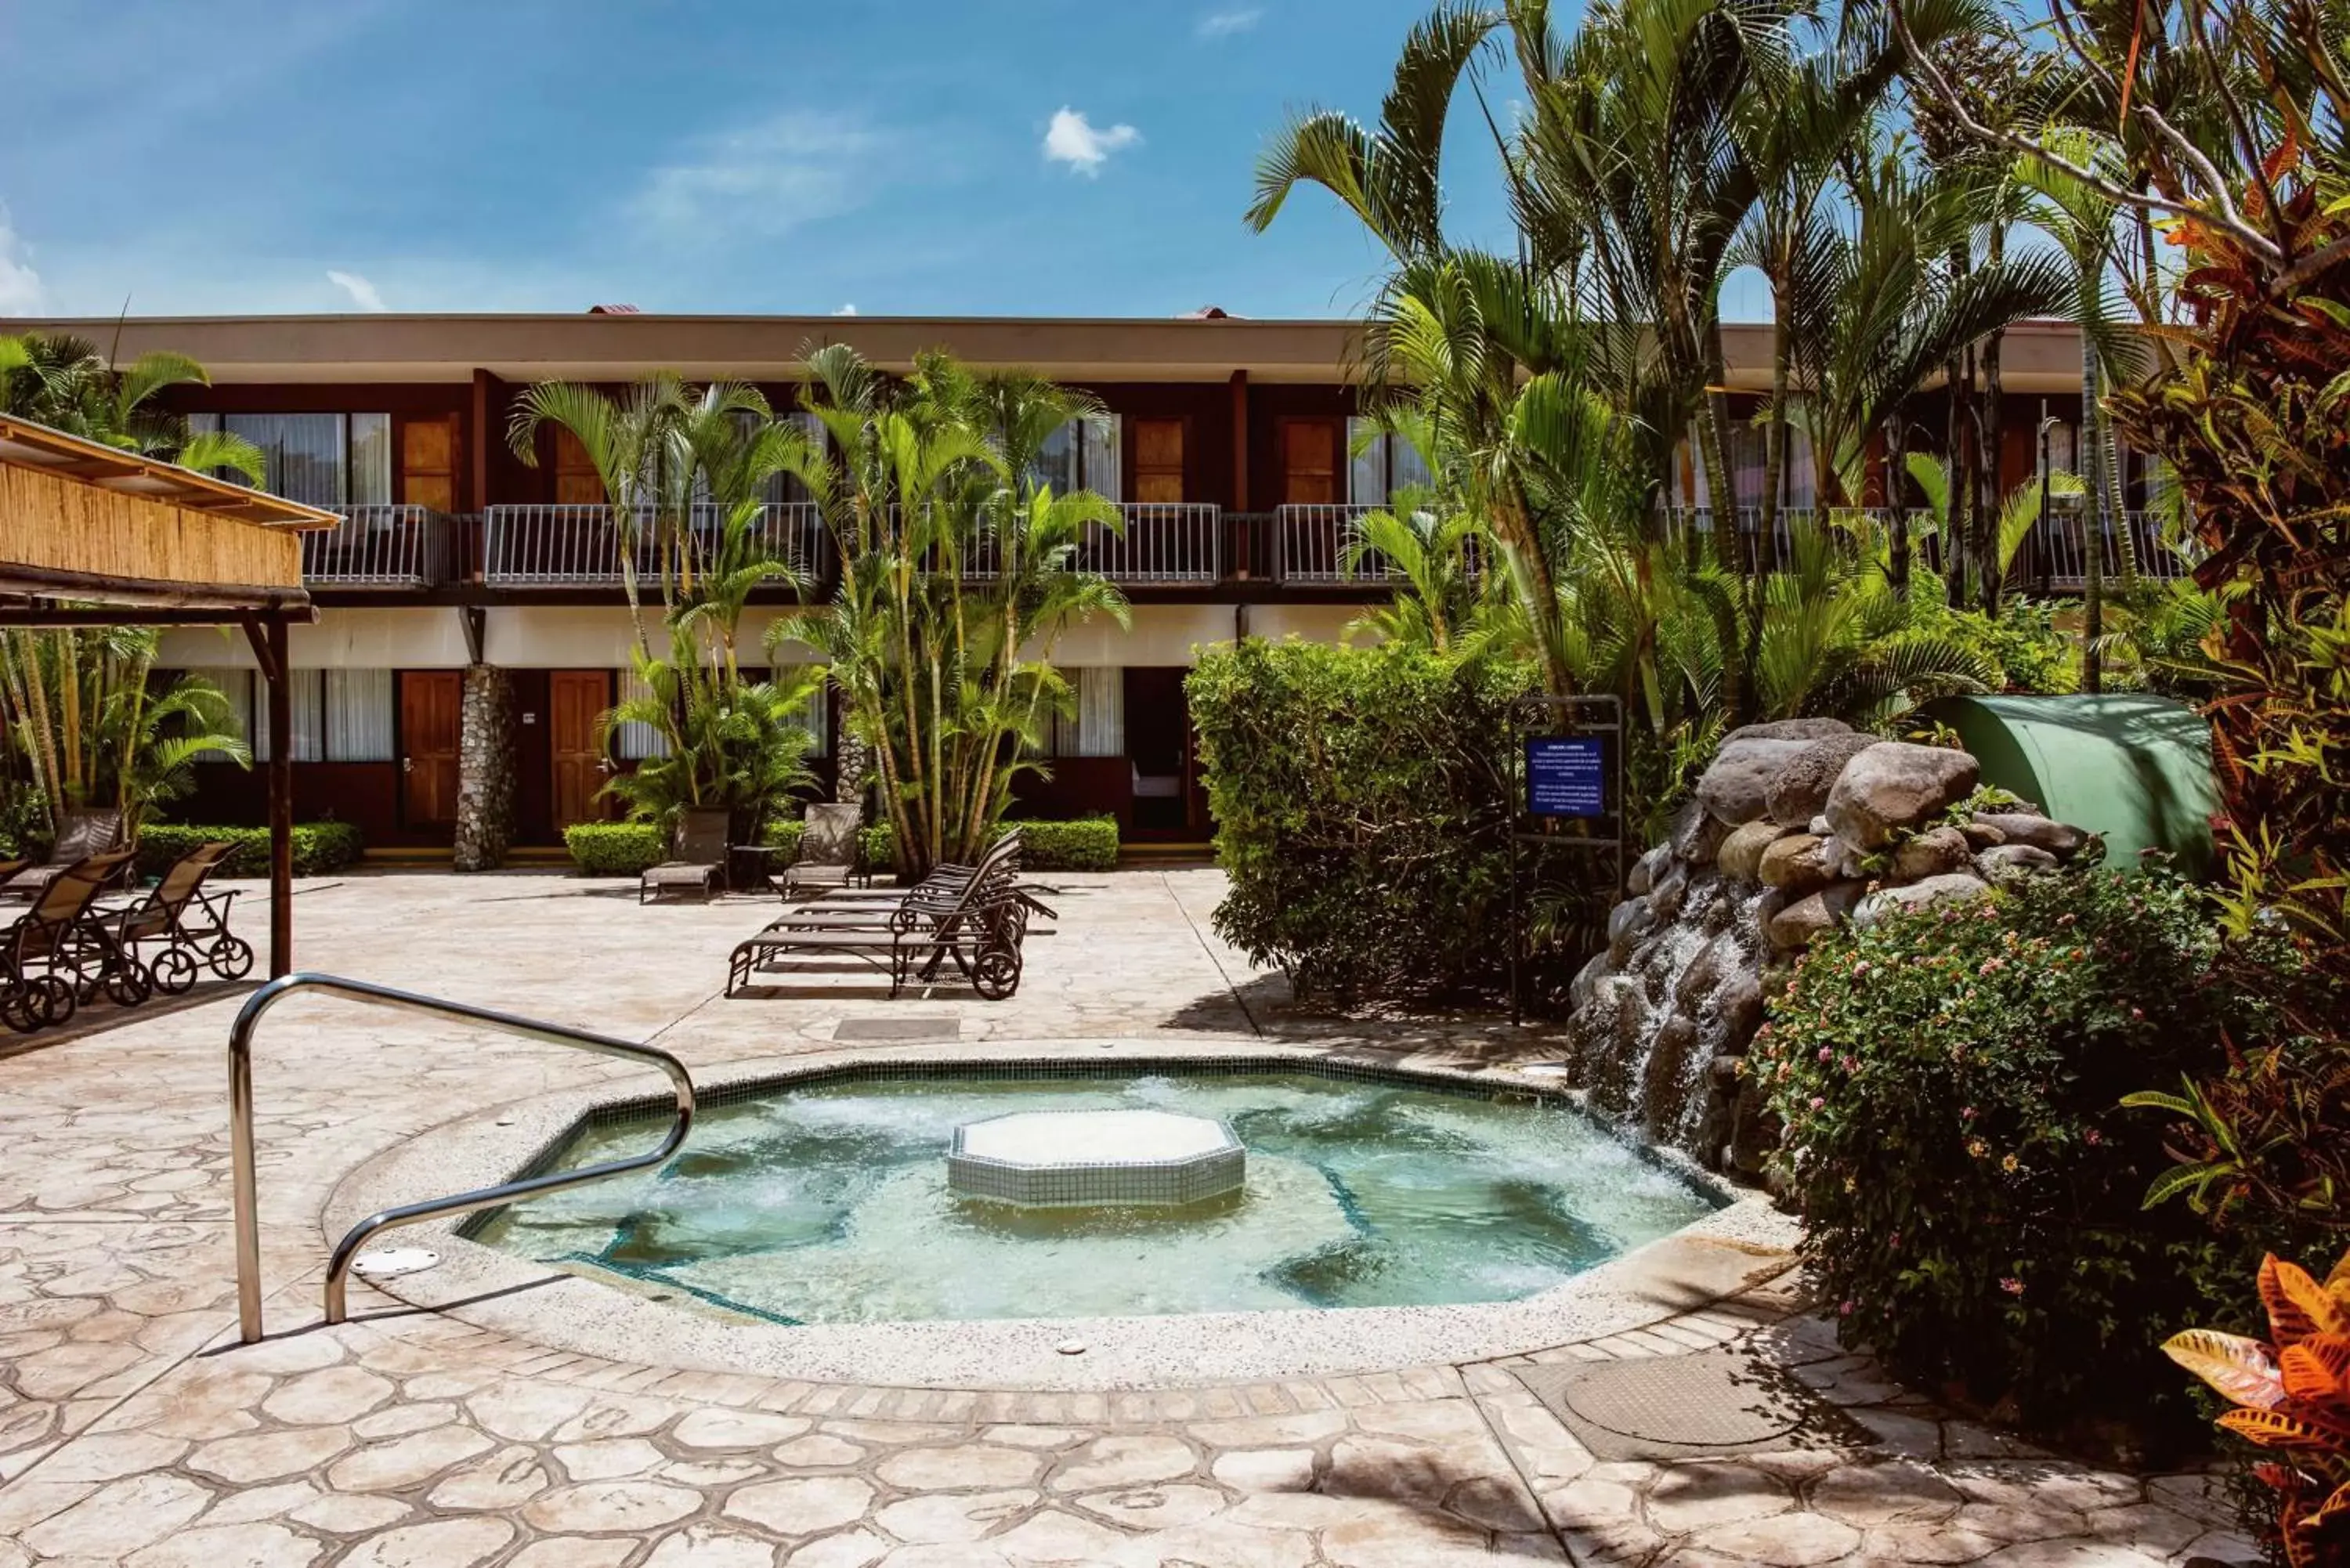 Hot Tub, Swimming Pool in Hilton Cariari DoubleTree San Jose - Costa Rica